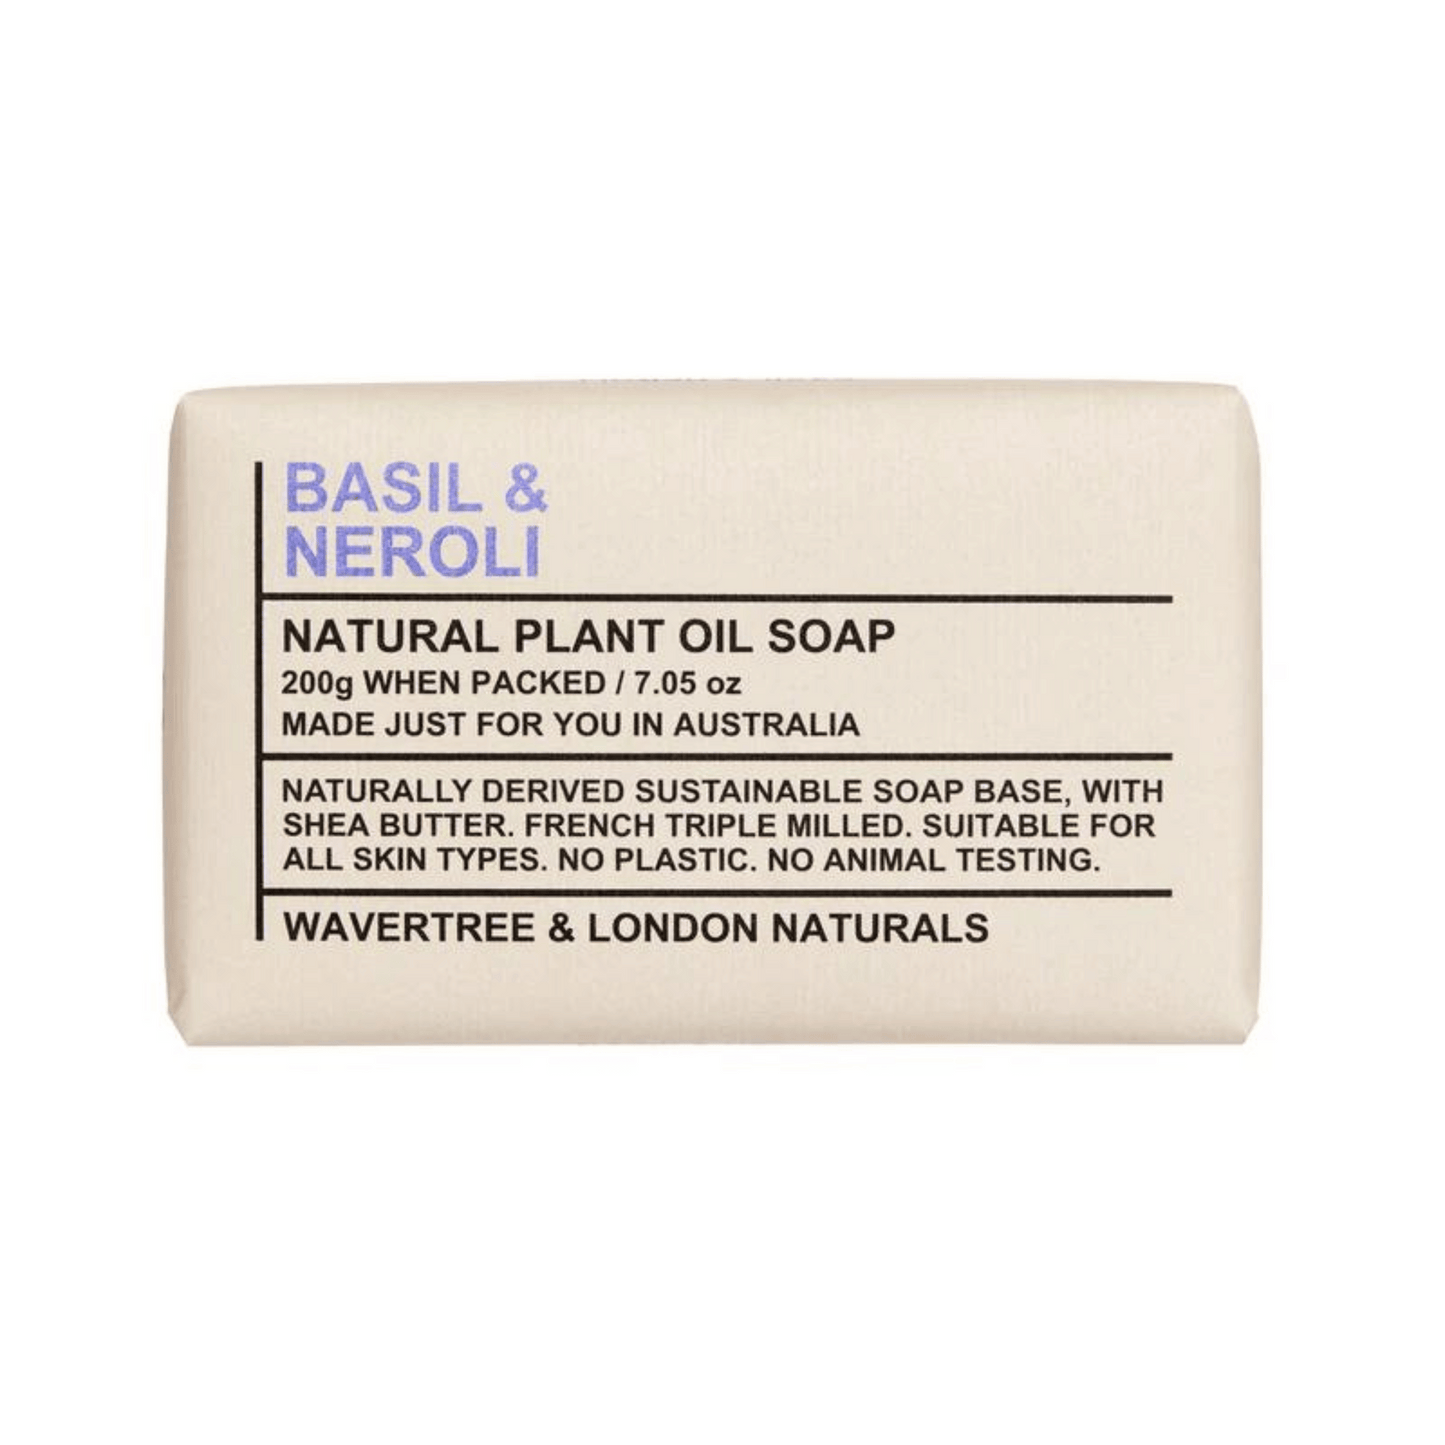 Primary Image of Basil & Neroli Soap Bar